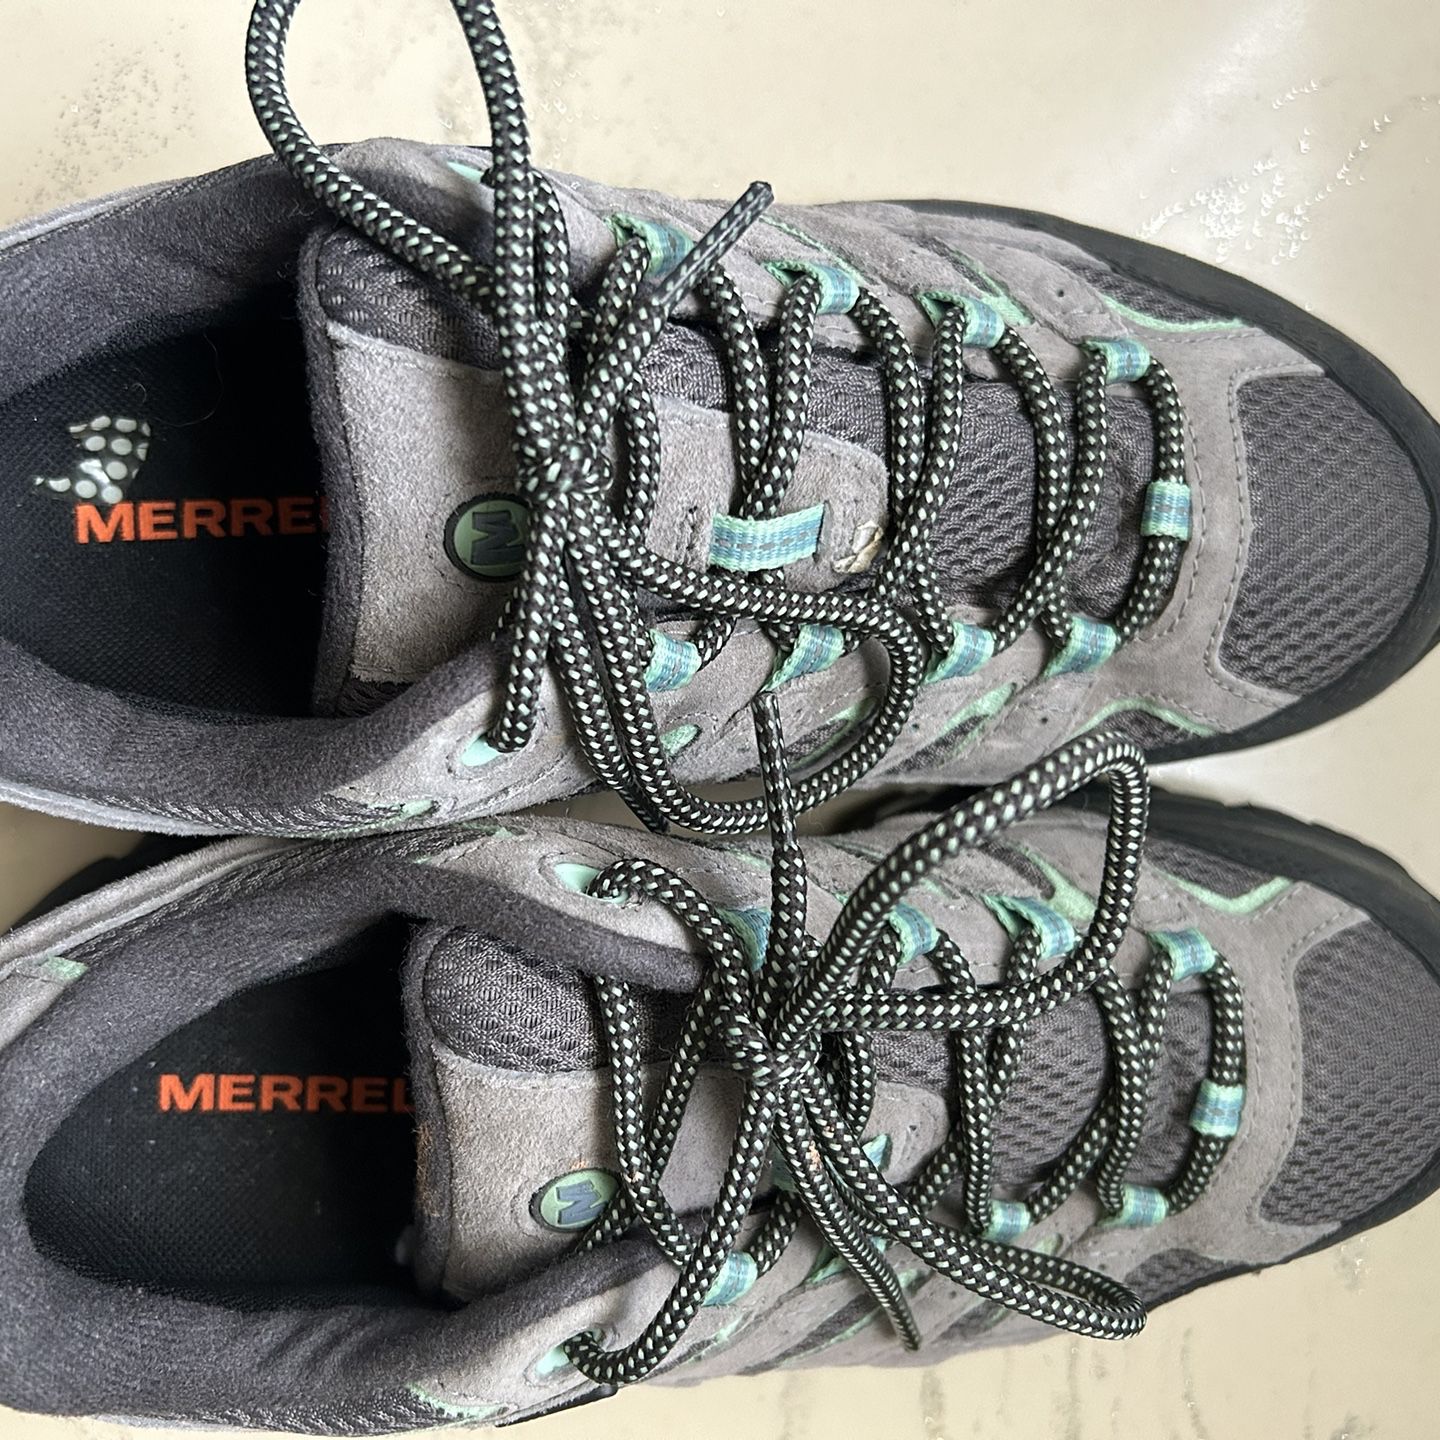 Merrell Women’s Moab 2 Waterproof size 8.5 